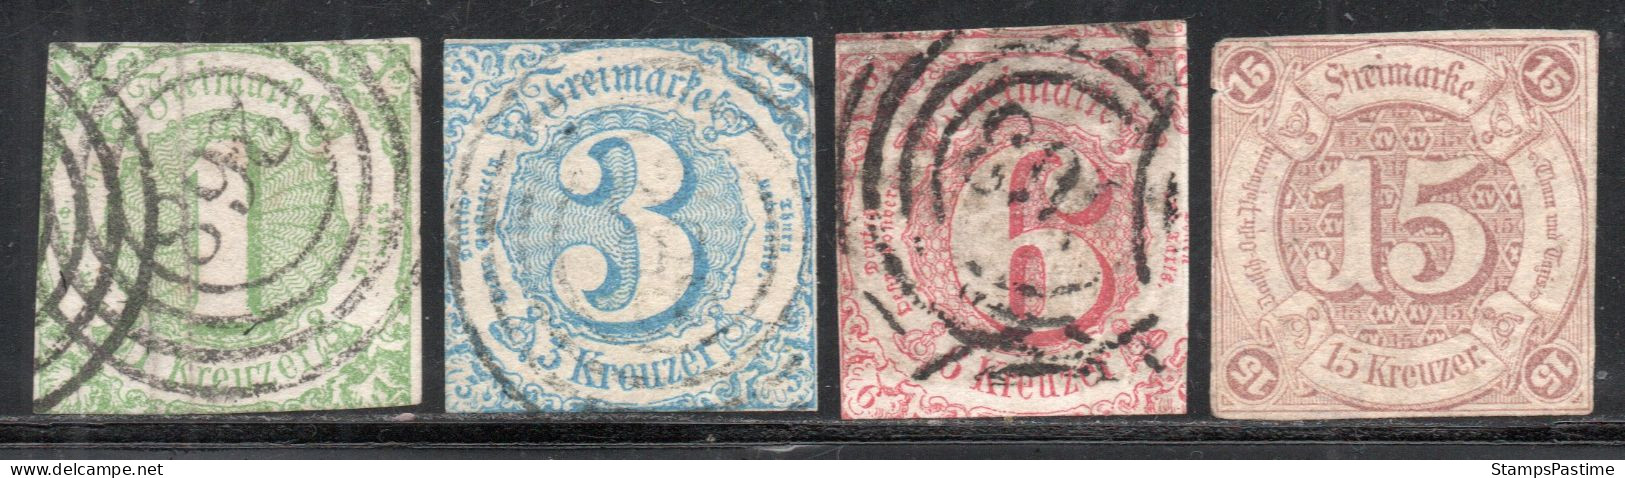 ALEMANIA – THURN Y TAXIS SUR Serie No Completa X 4 Sellos Usados CIFRAS Año 1859 – Valorizada En Catálogo € 104,25 - Used